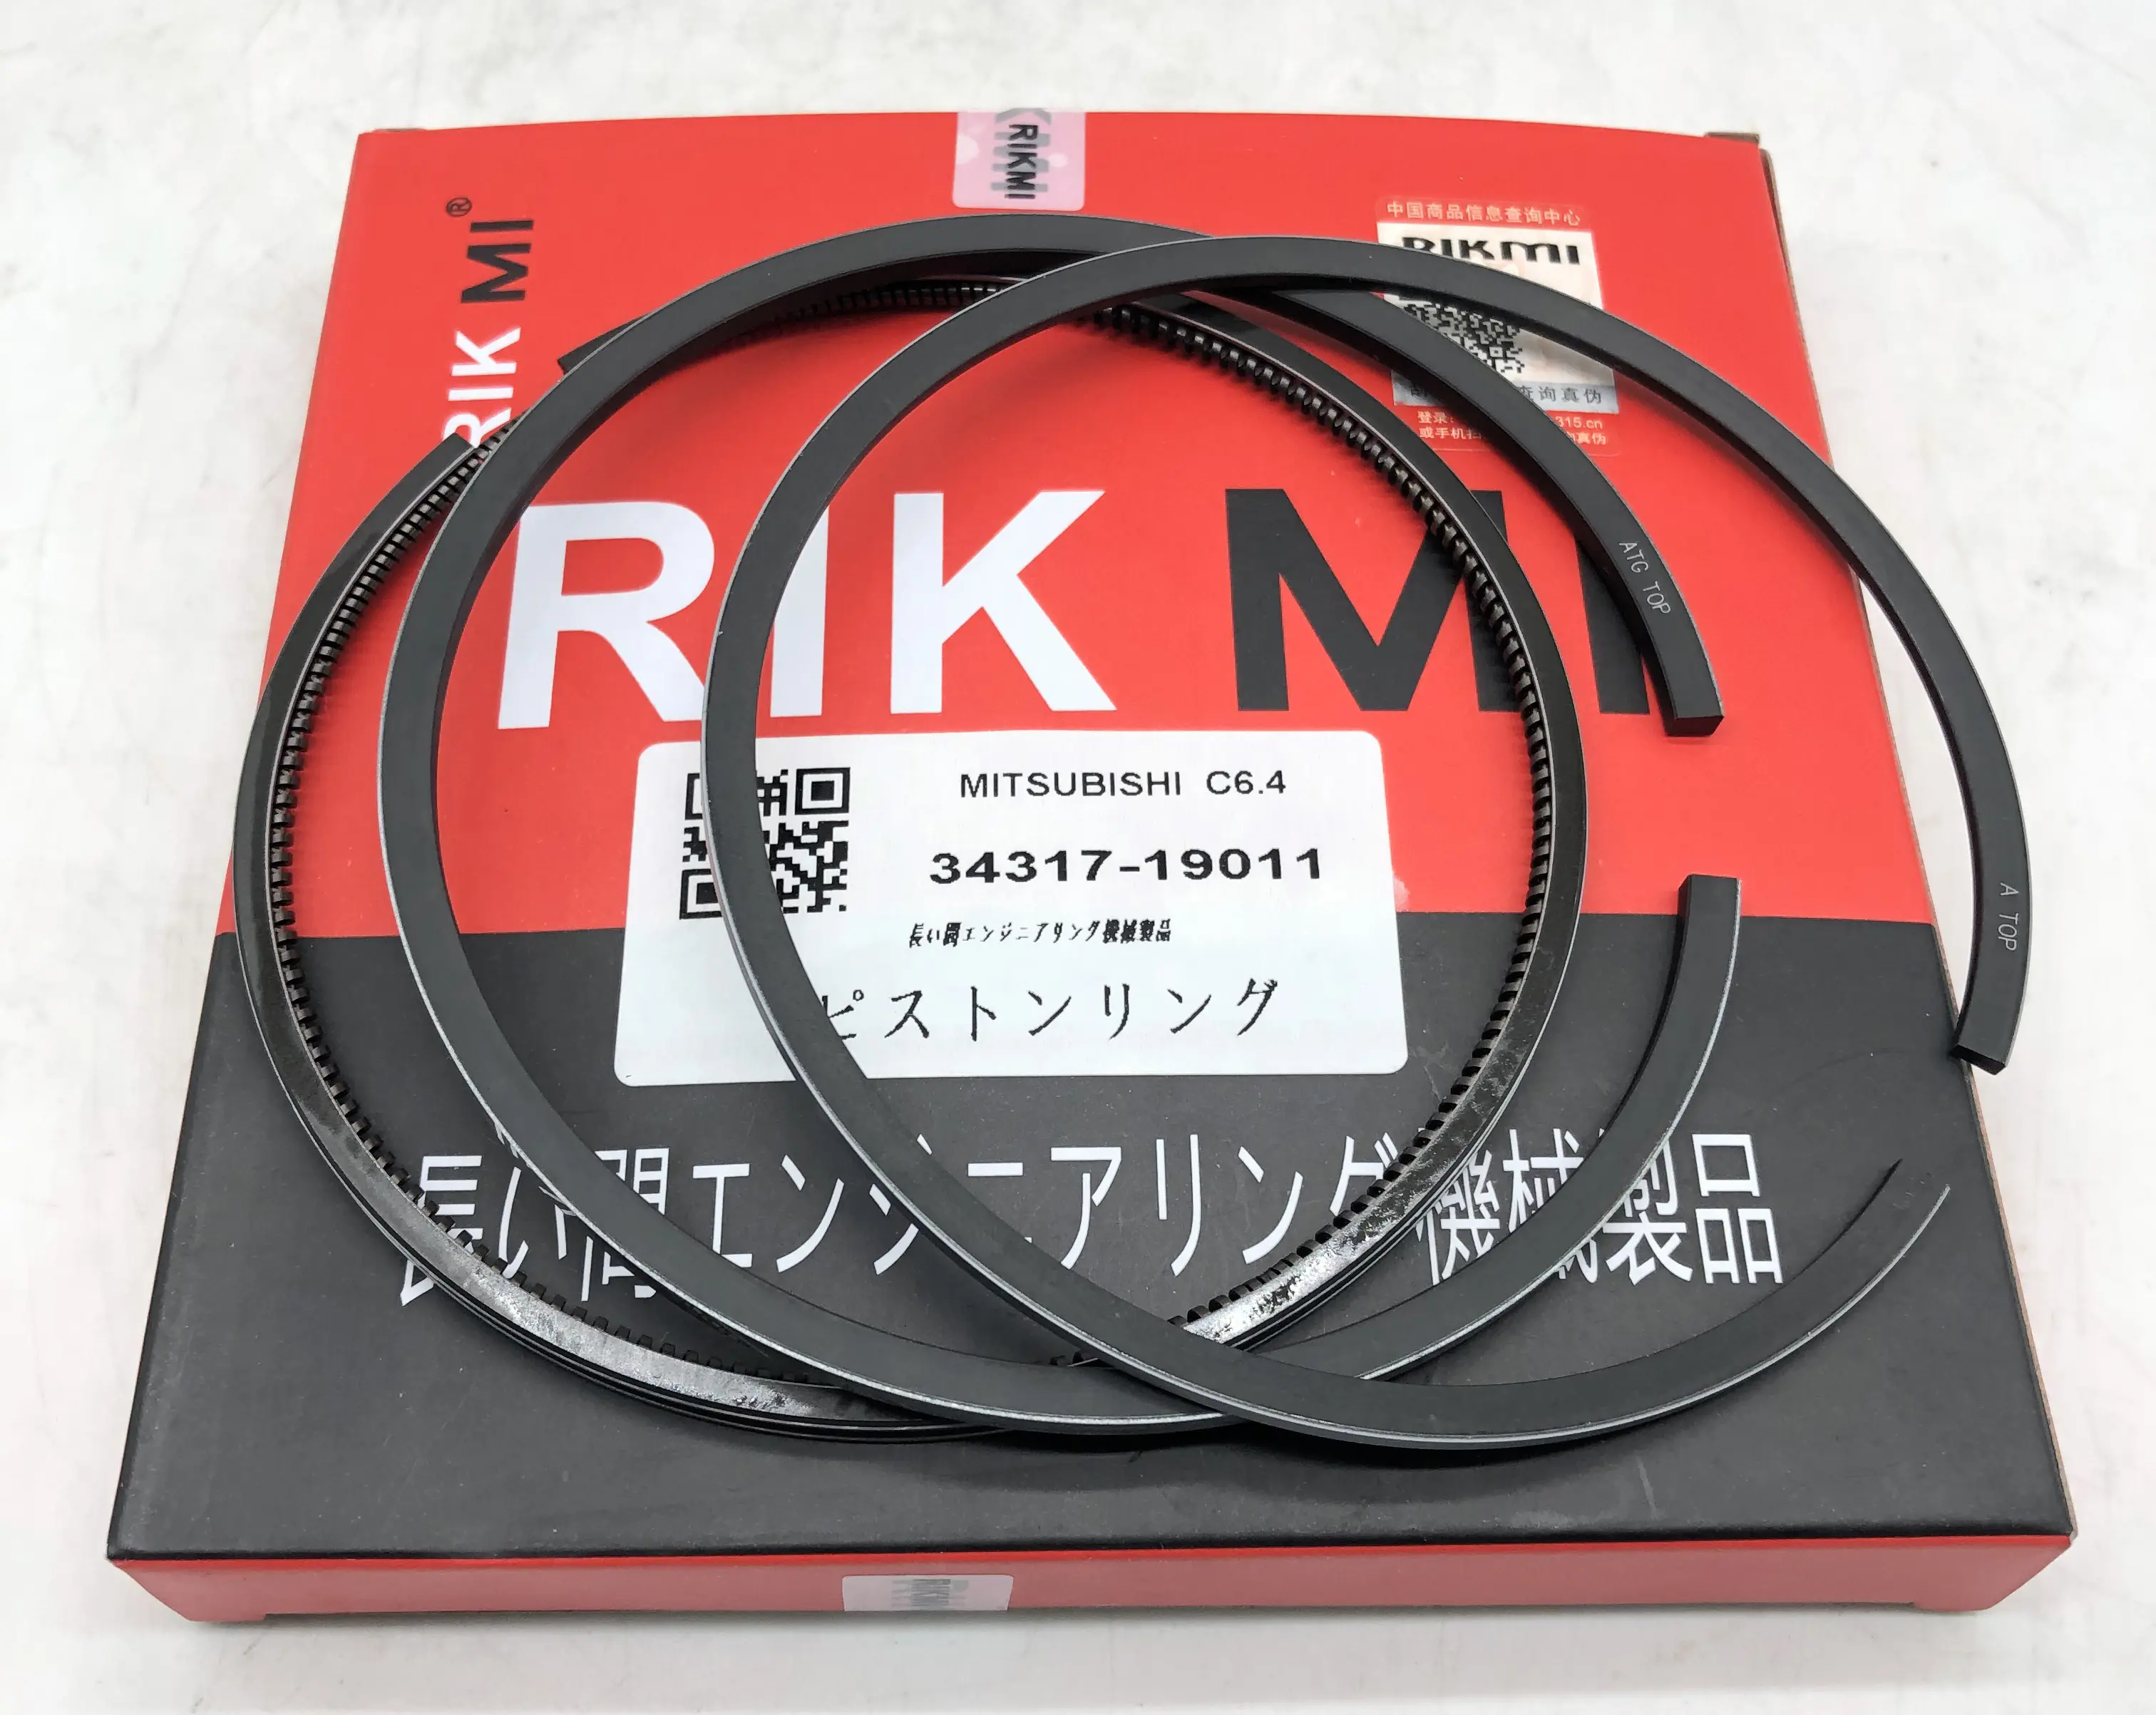 Hochwertiger Rikmi-Kolben ring für Mitsubishi C6.4 C4.2 Dieselmotor 34317-19011